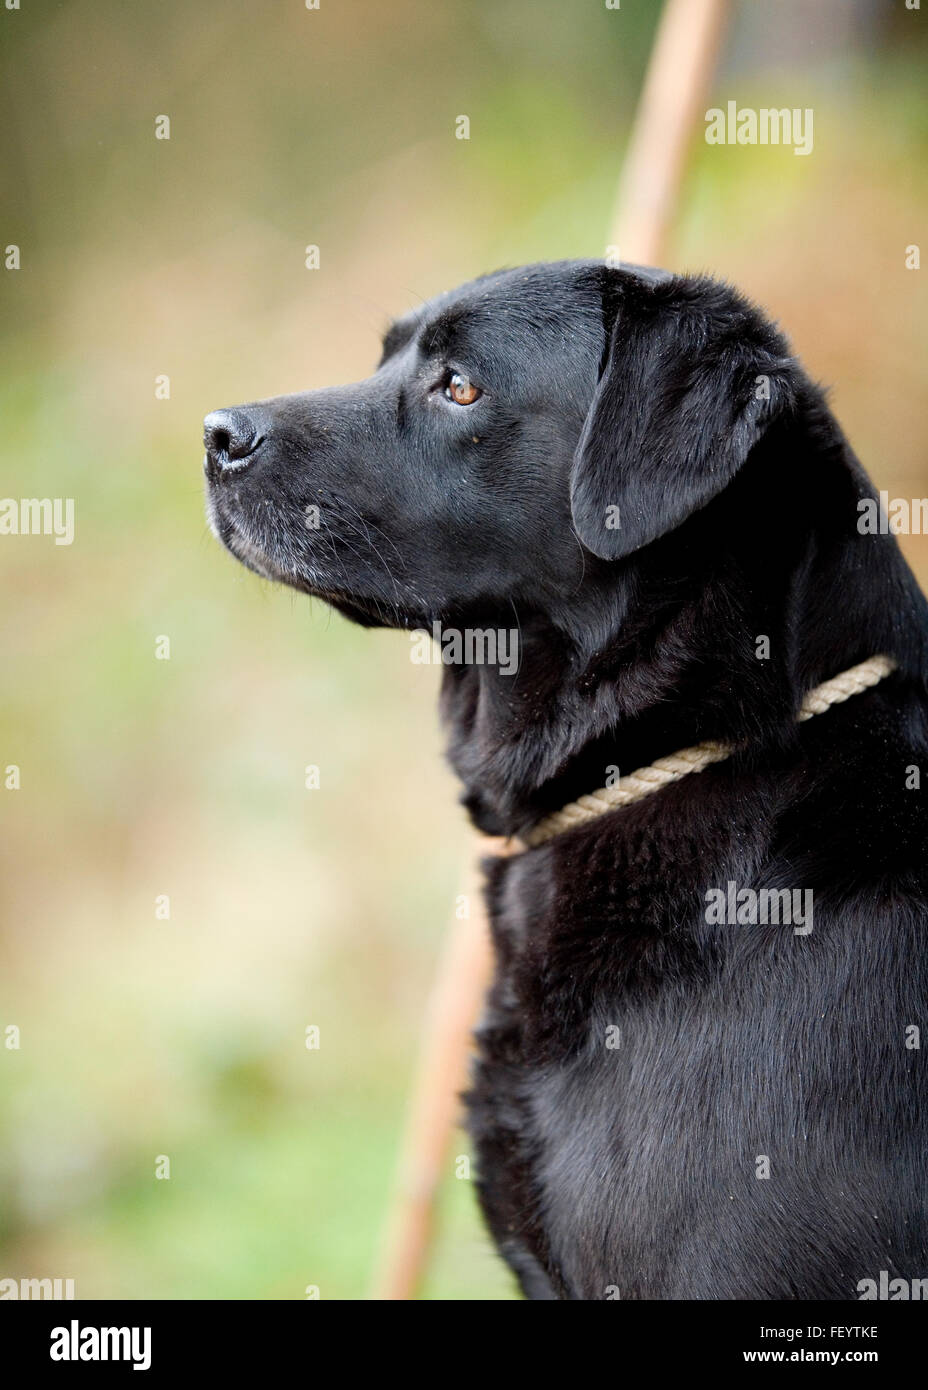 black labrador retriever Stock Photo